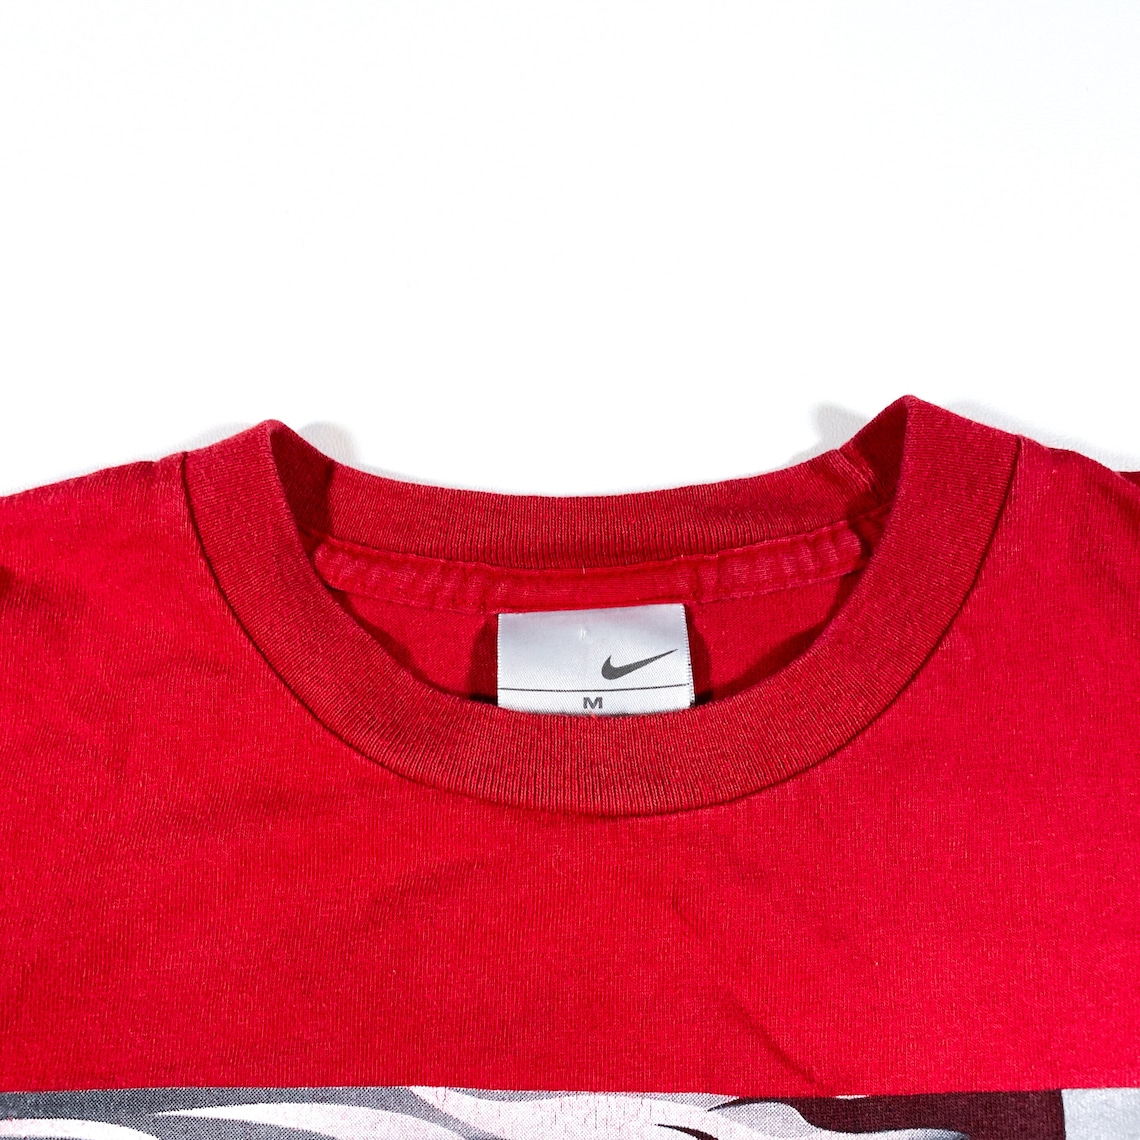 Vintage Nike Flames Shirt 90s nike tshirt vintage nike shirt | Etsy